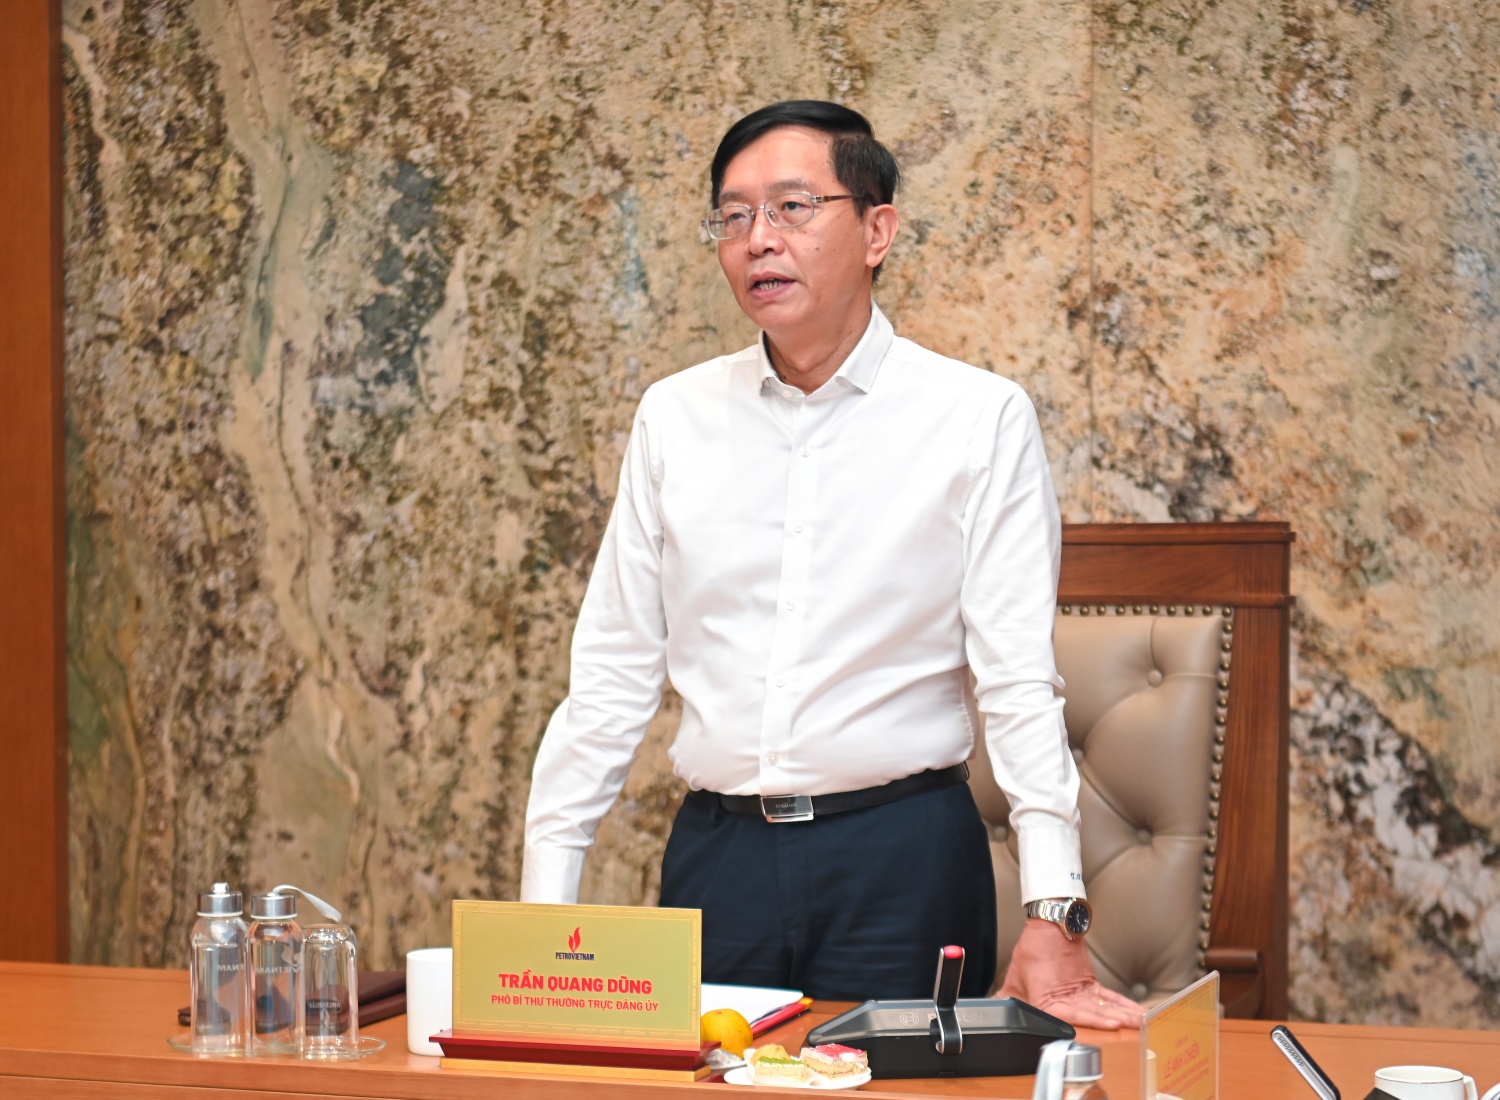 Đồng chí Trần Quang Dũng, Phó Bí thư thường trực Đảng ủy Tập đoàn phát biểu khai mạc Hội nghị